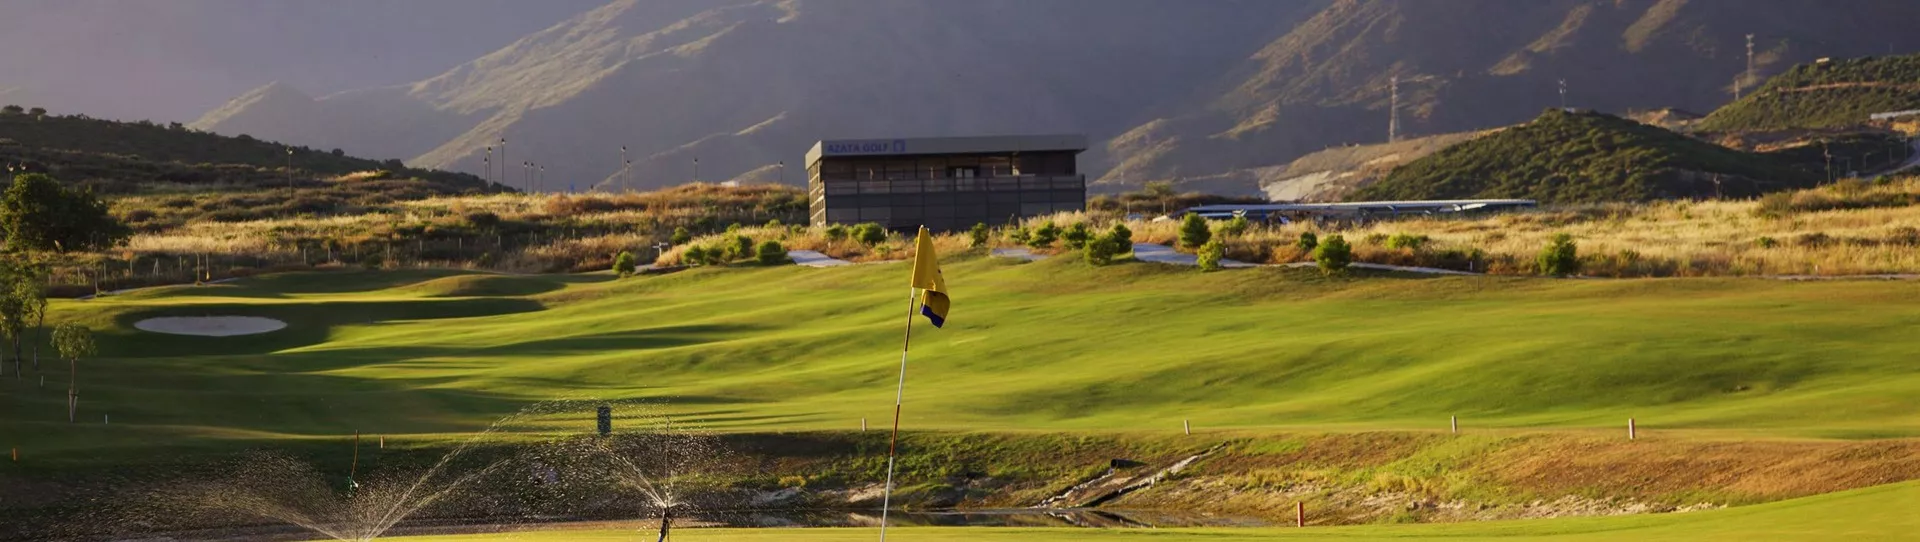 Spain golf courses - Azata Golf - Photo 1